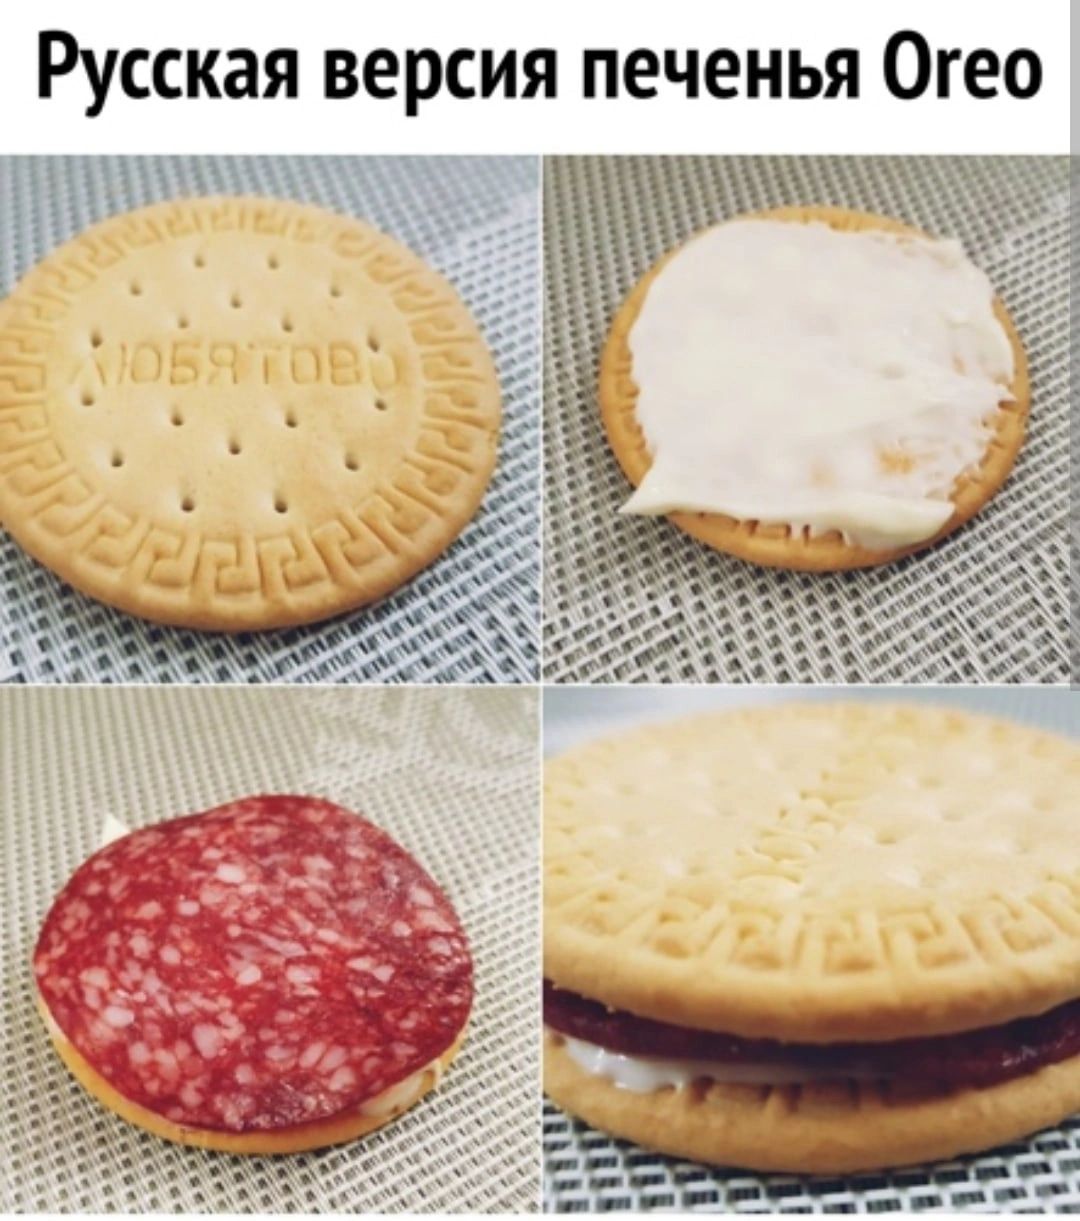 Русская версия печенья Огео ЕП А